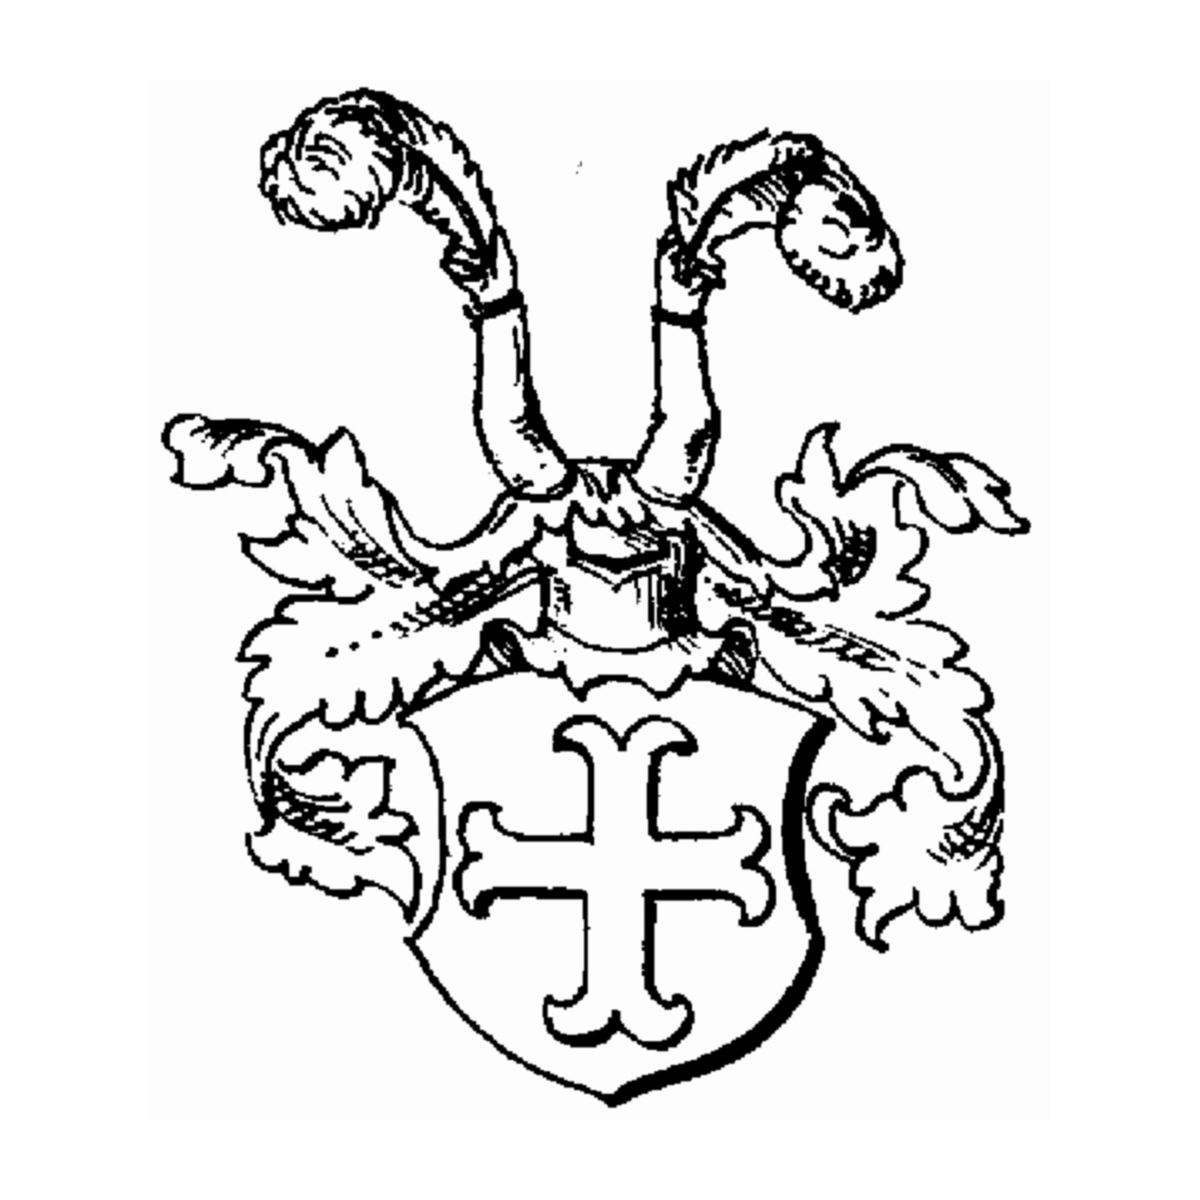 Wappen der Familie Hinz